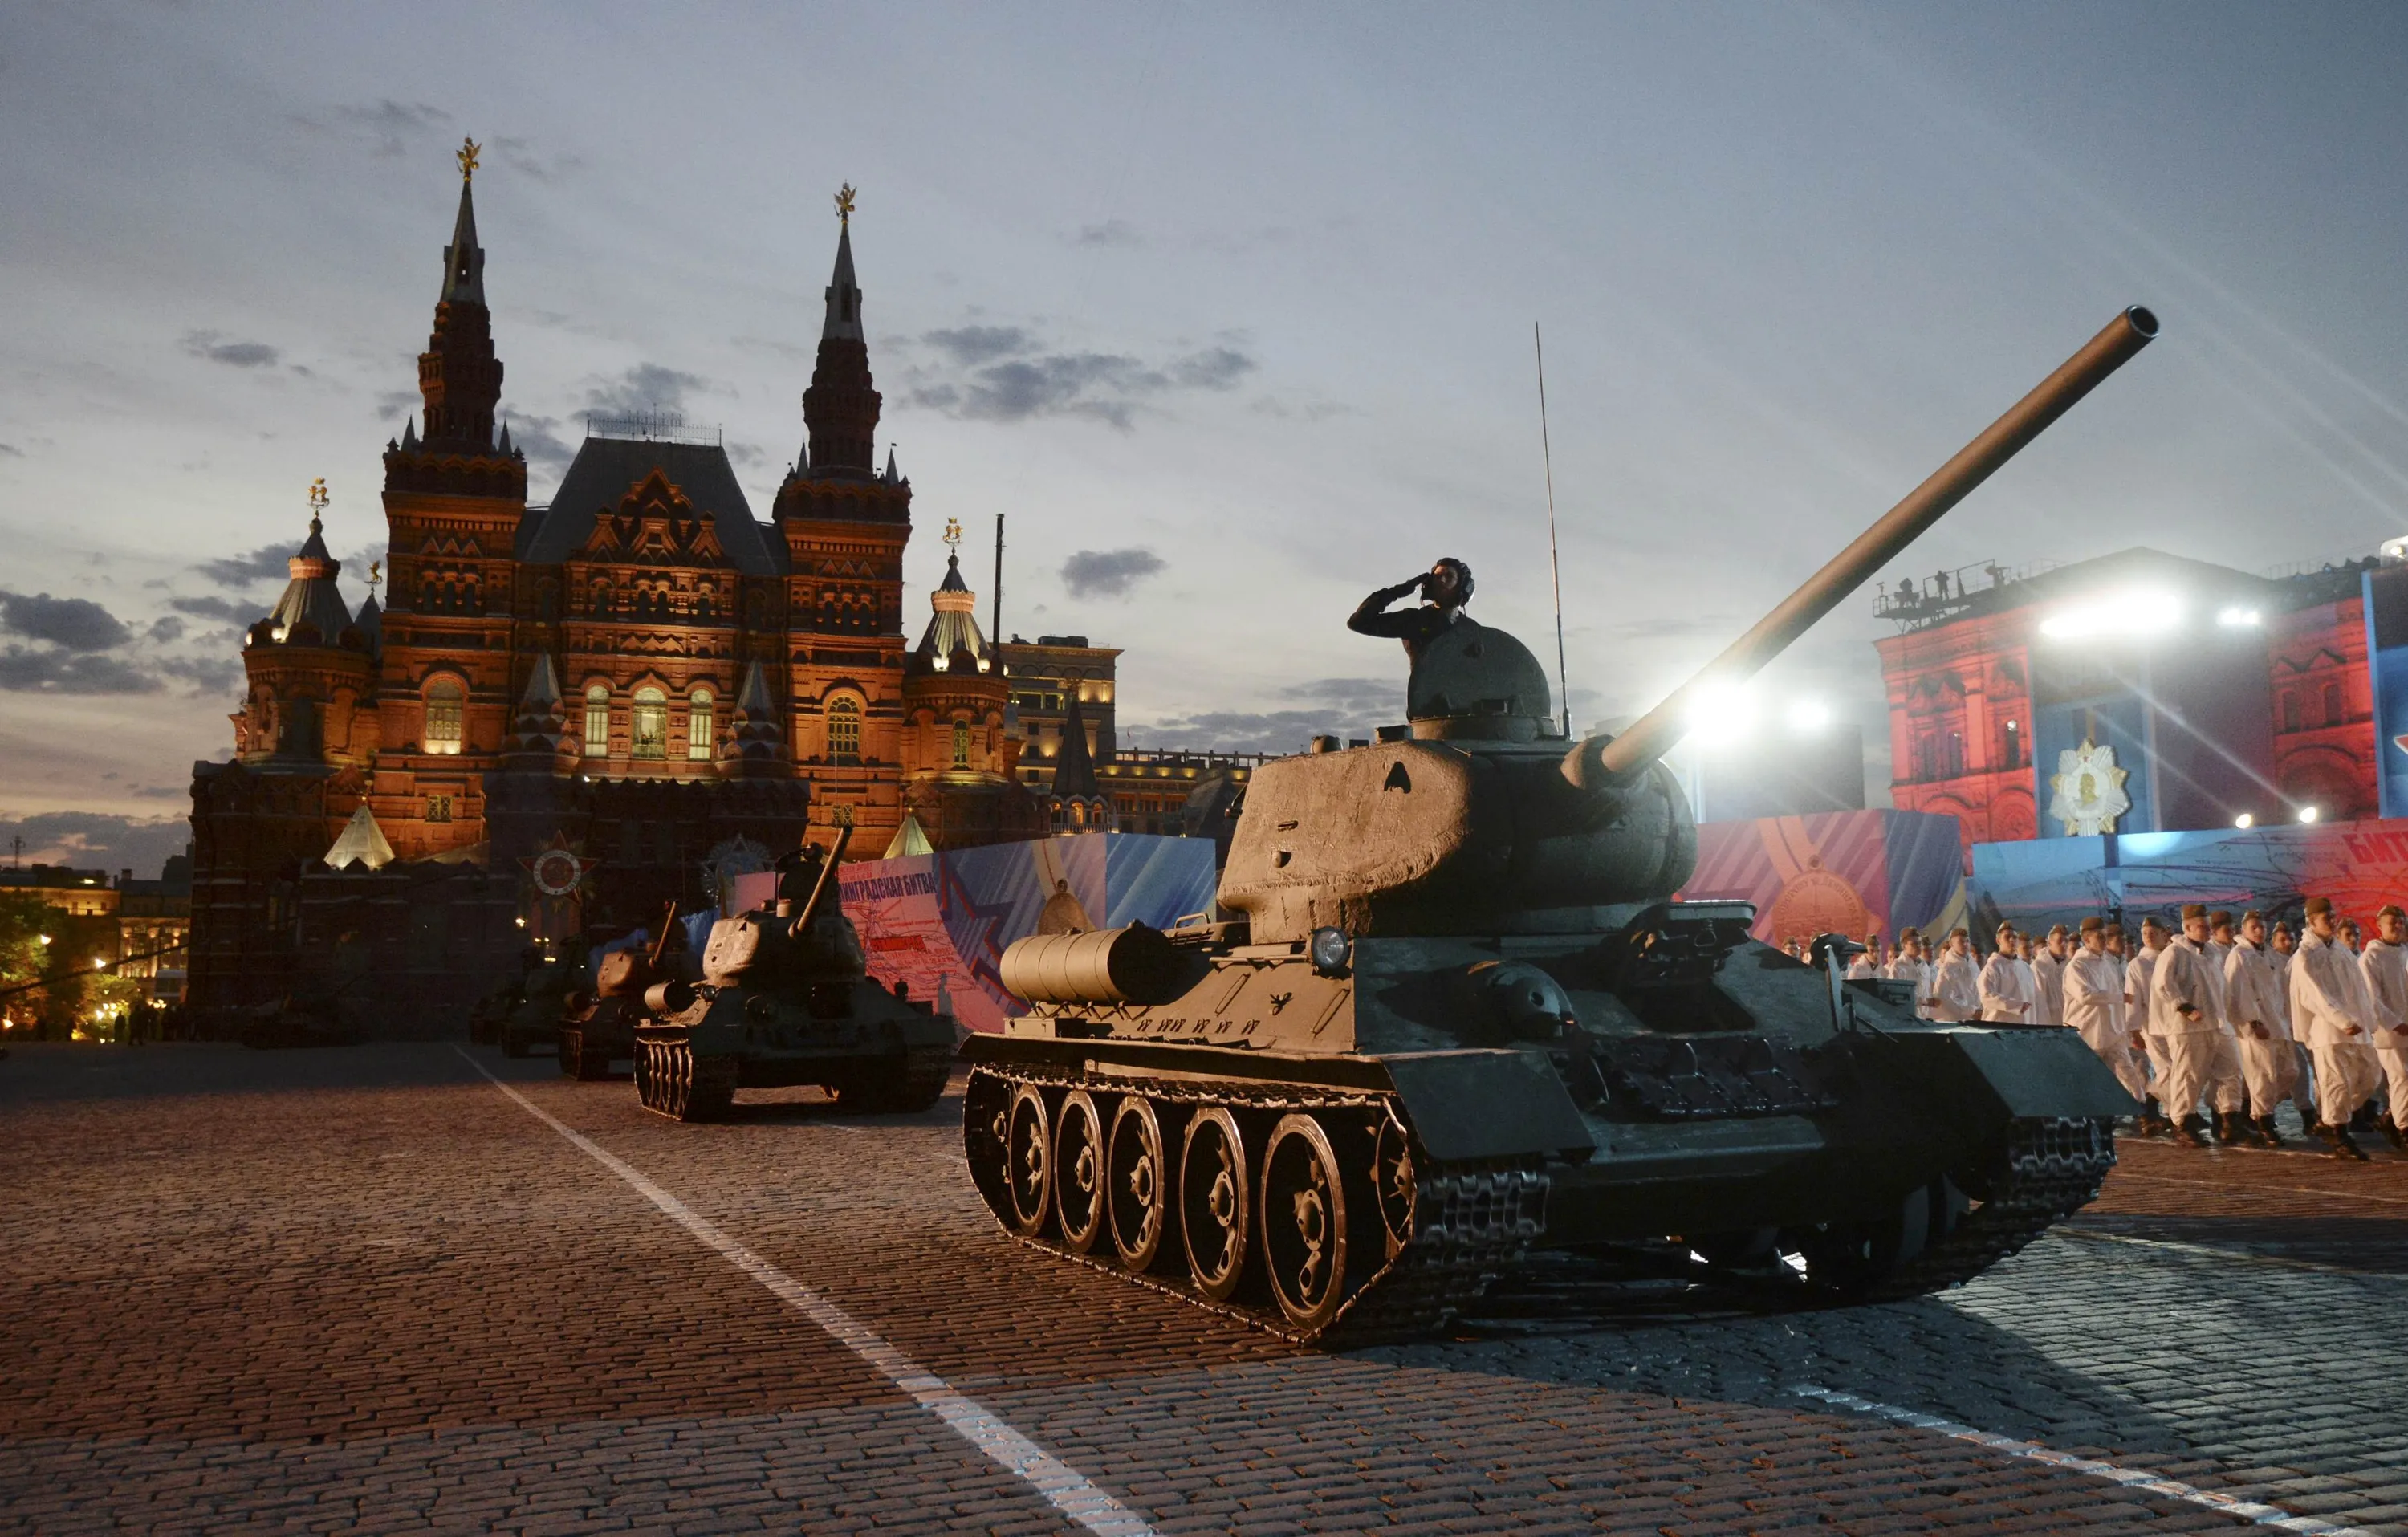 Военные победы стран. Т-34 на параде Победы 1945. Танк т-34 на красной площади. Т 34 на красной площади. Т-34 на параде Победы 1945 года на красной площади в Москве.